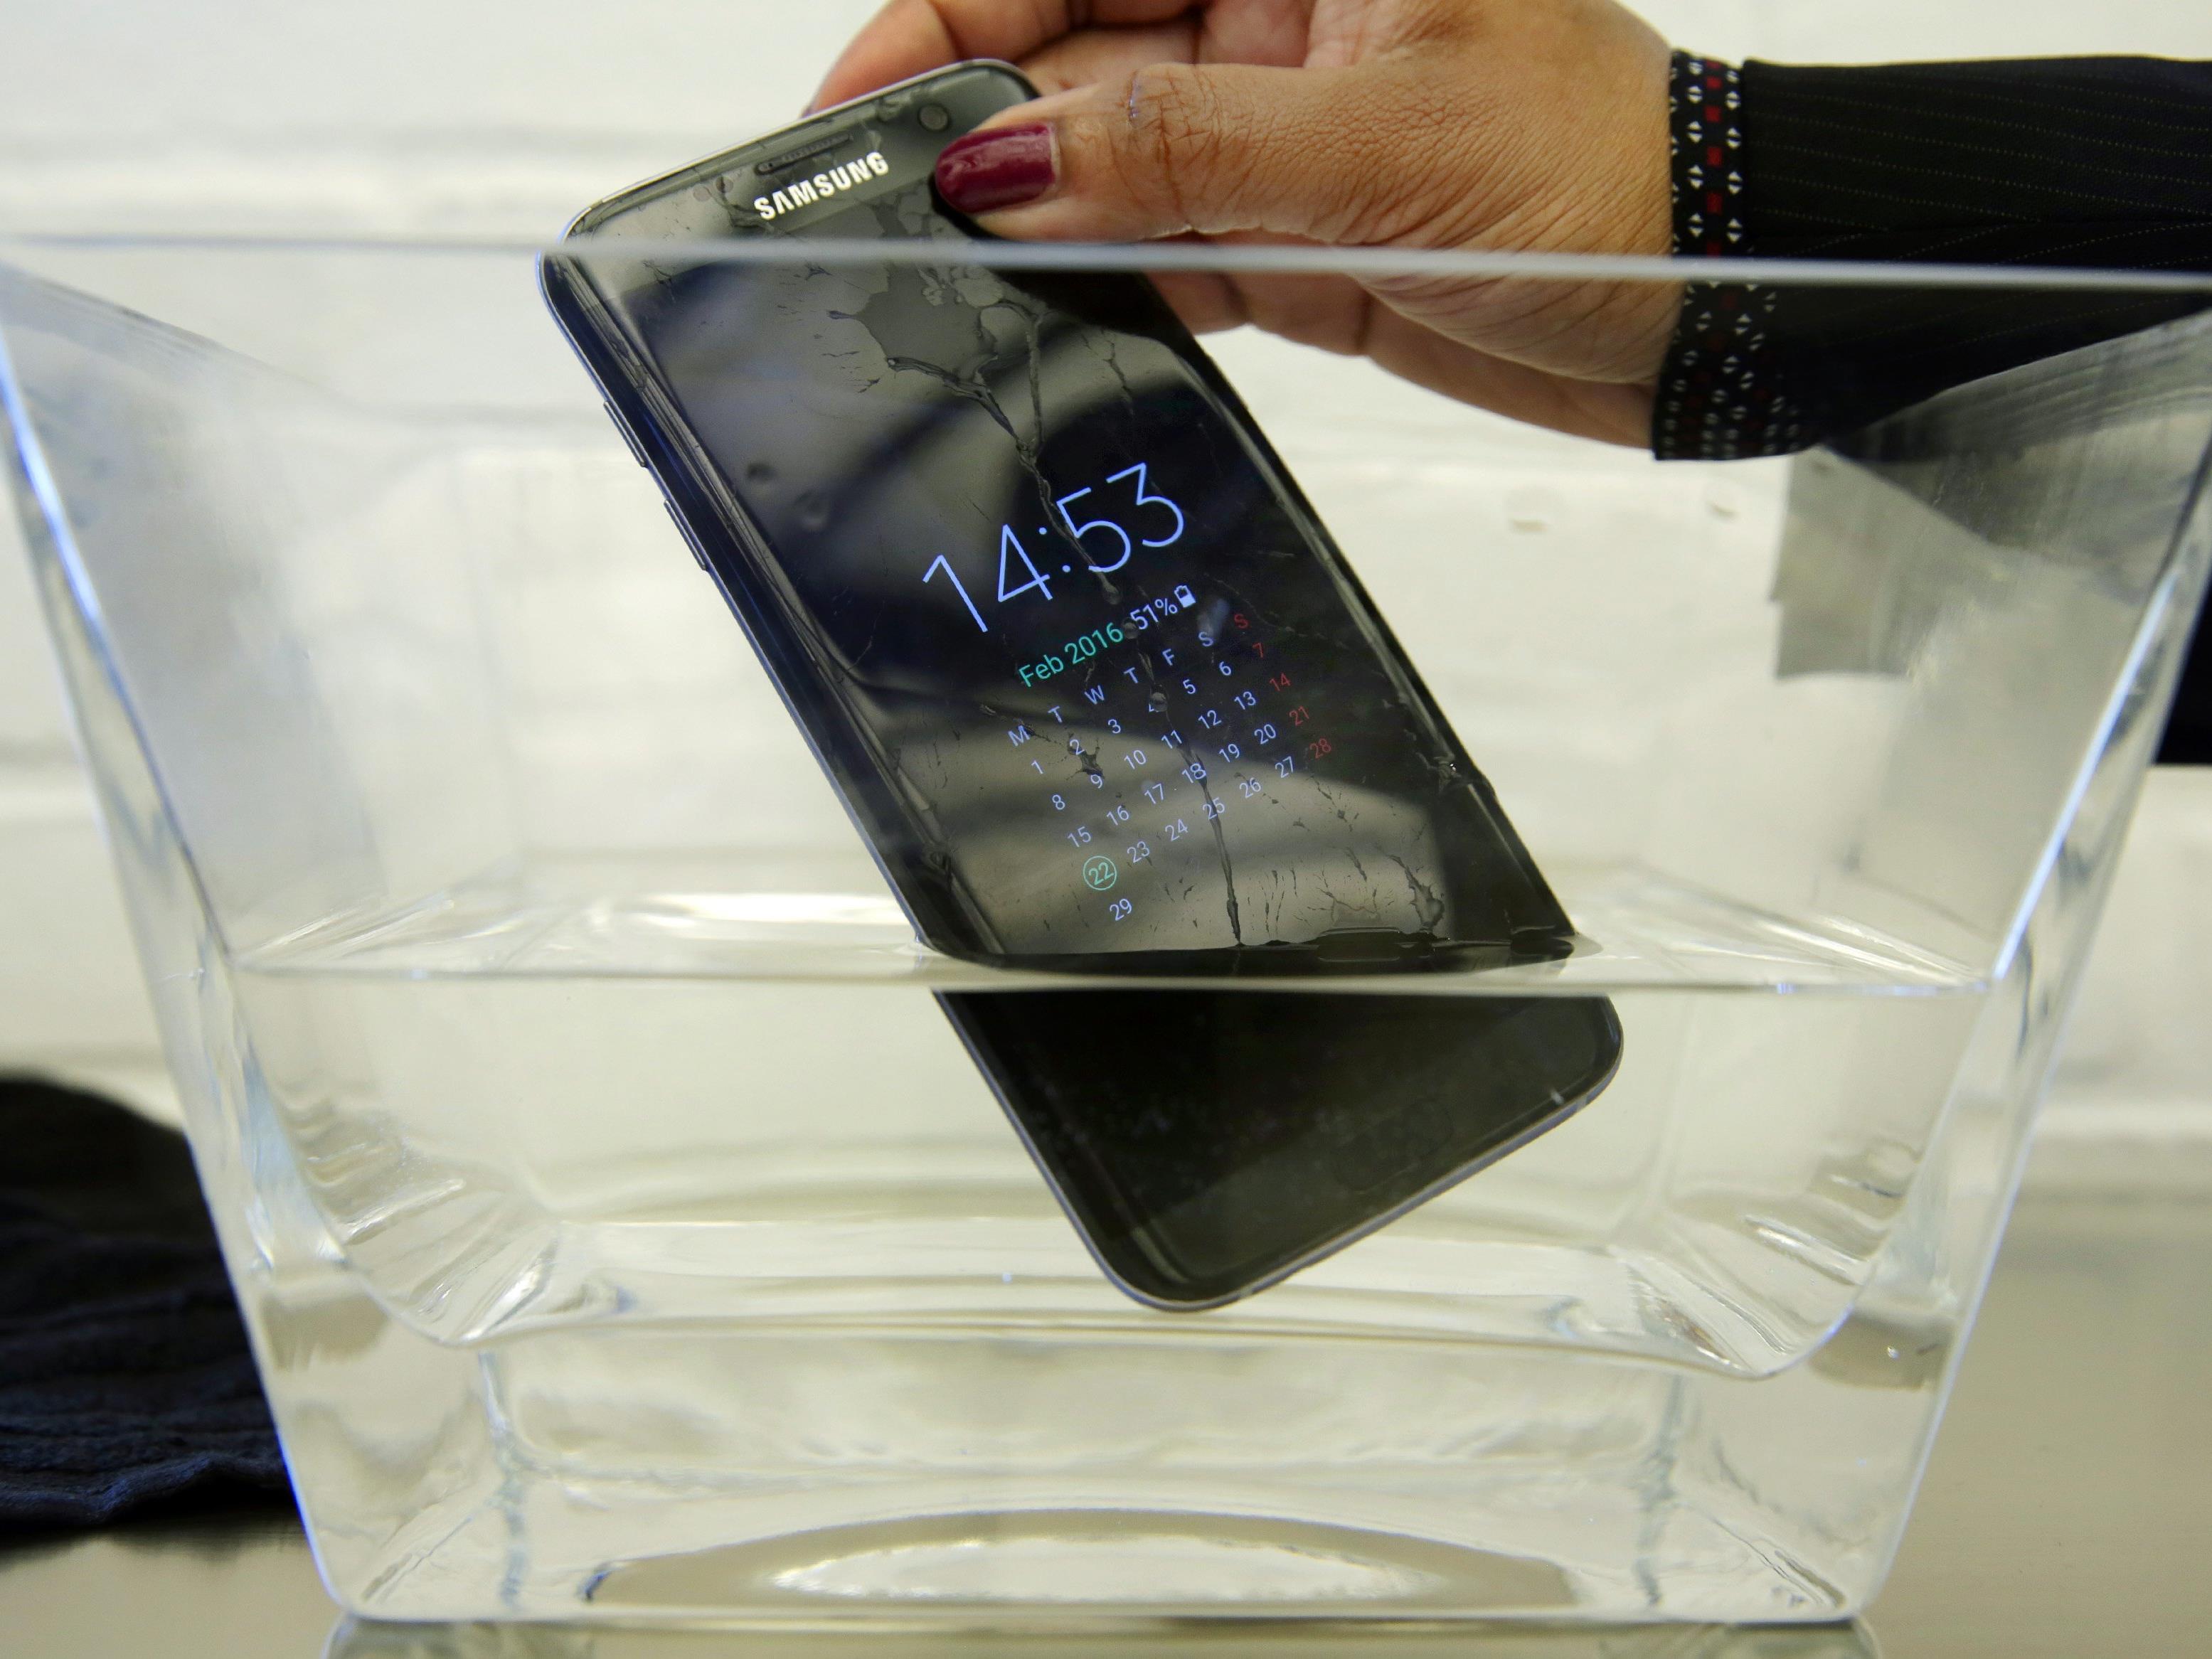 Ein Samsung Smartphone im Härtetest. Wasser und Handys sind ein heikles Thema.